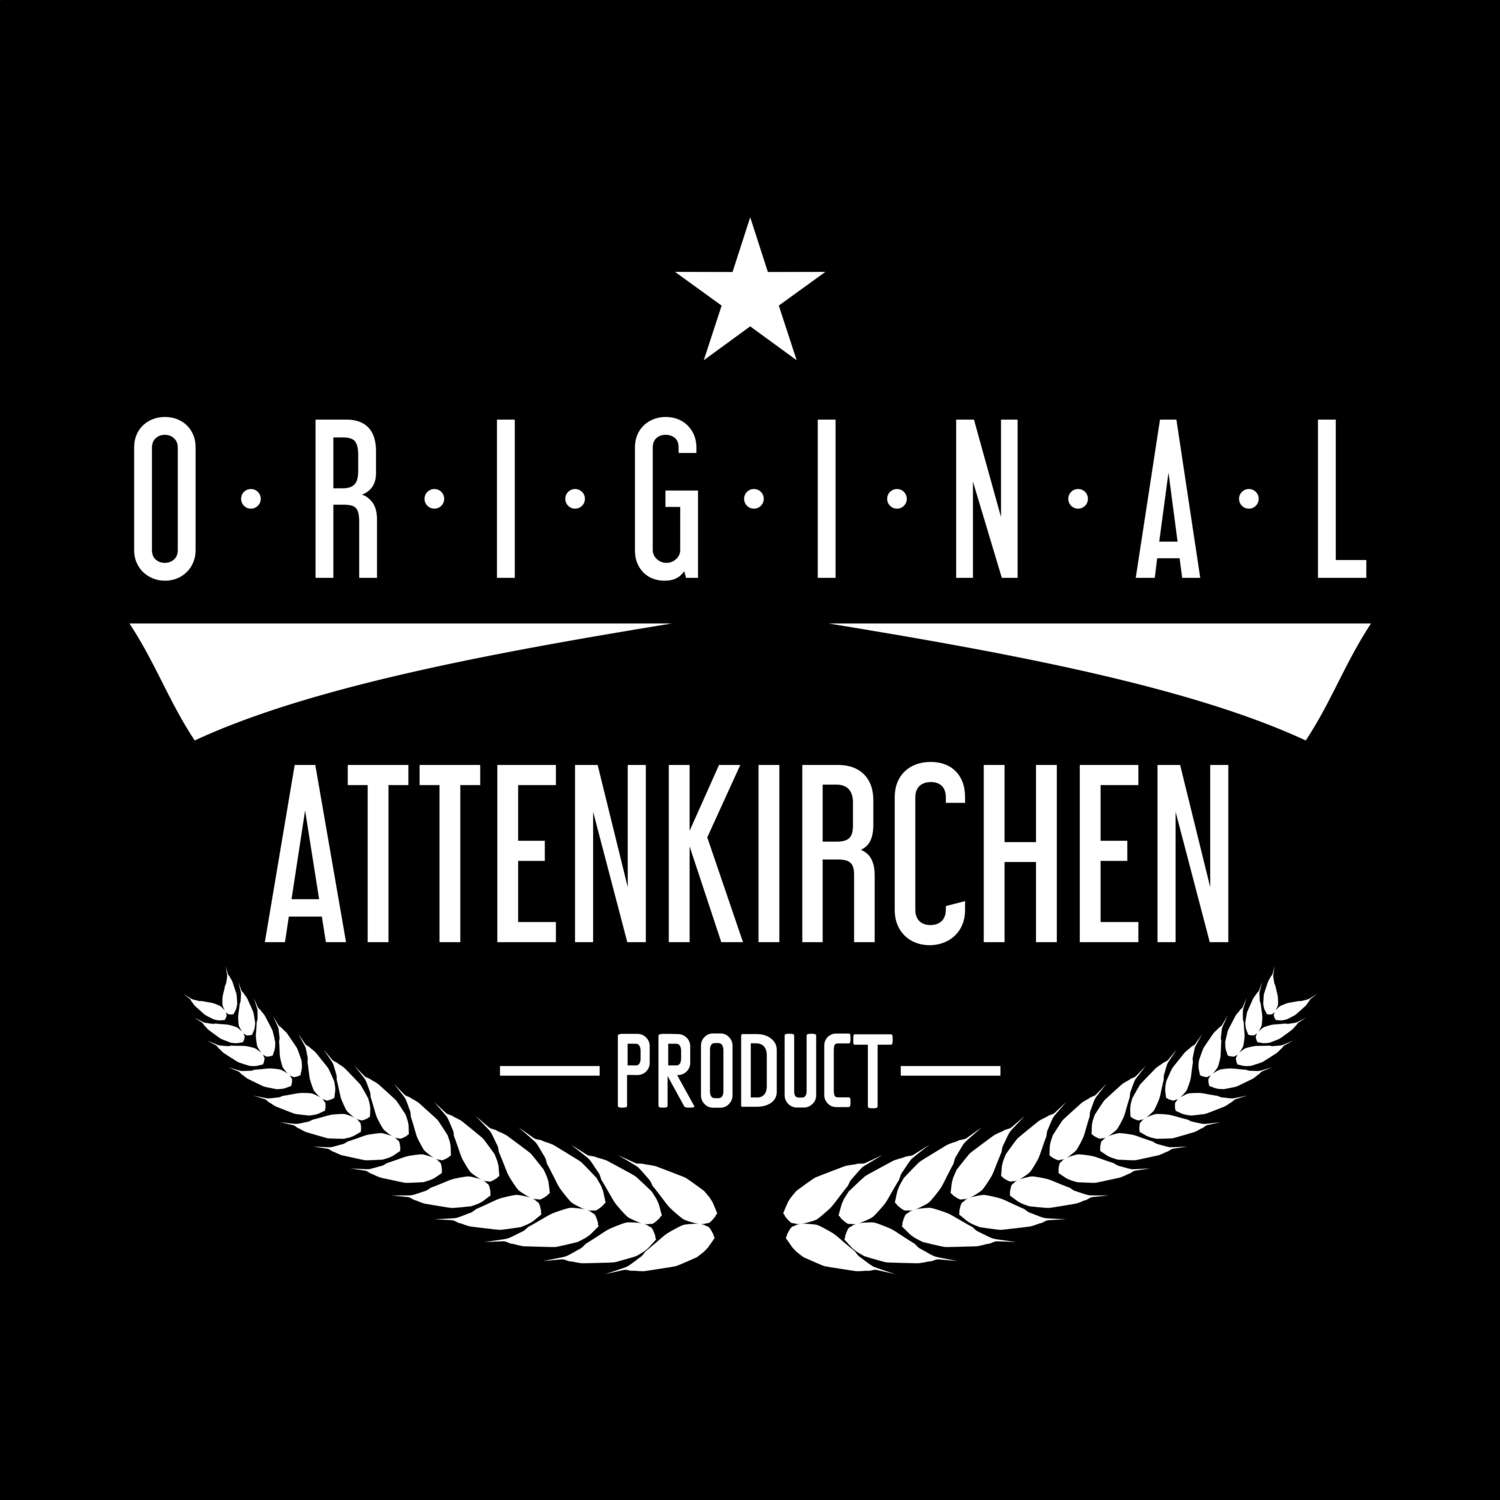 Attenkirchen T-Shirt »Original Product«